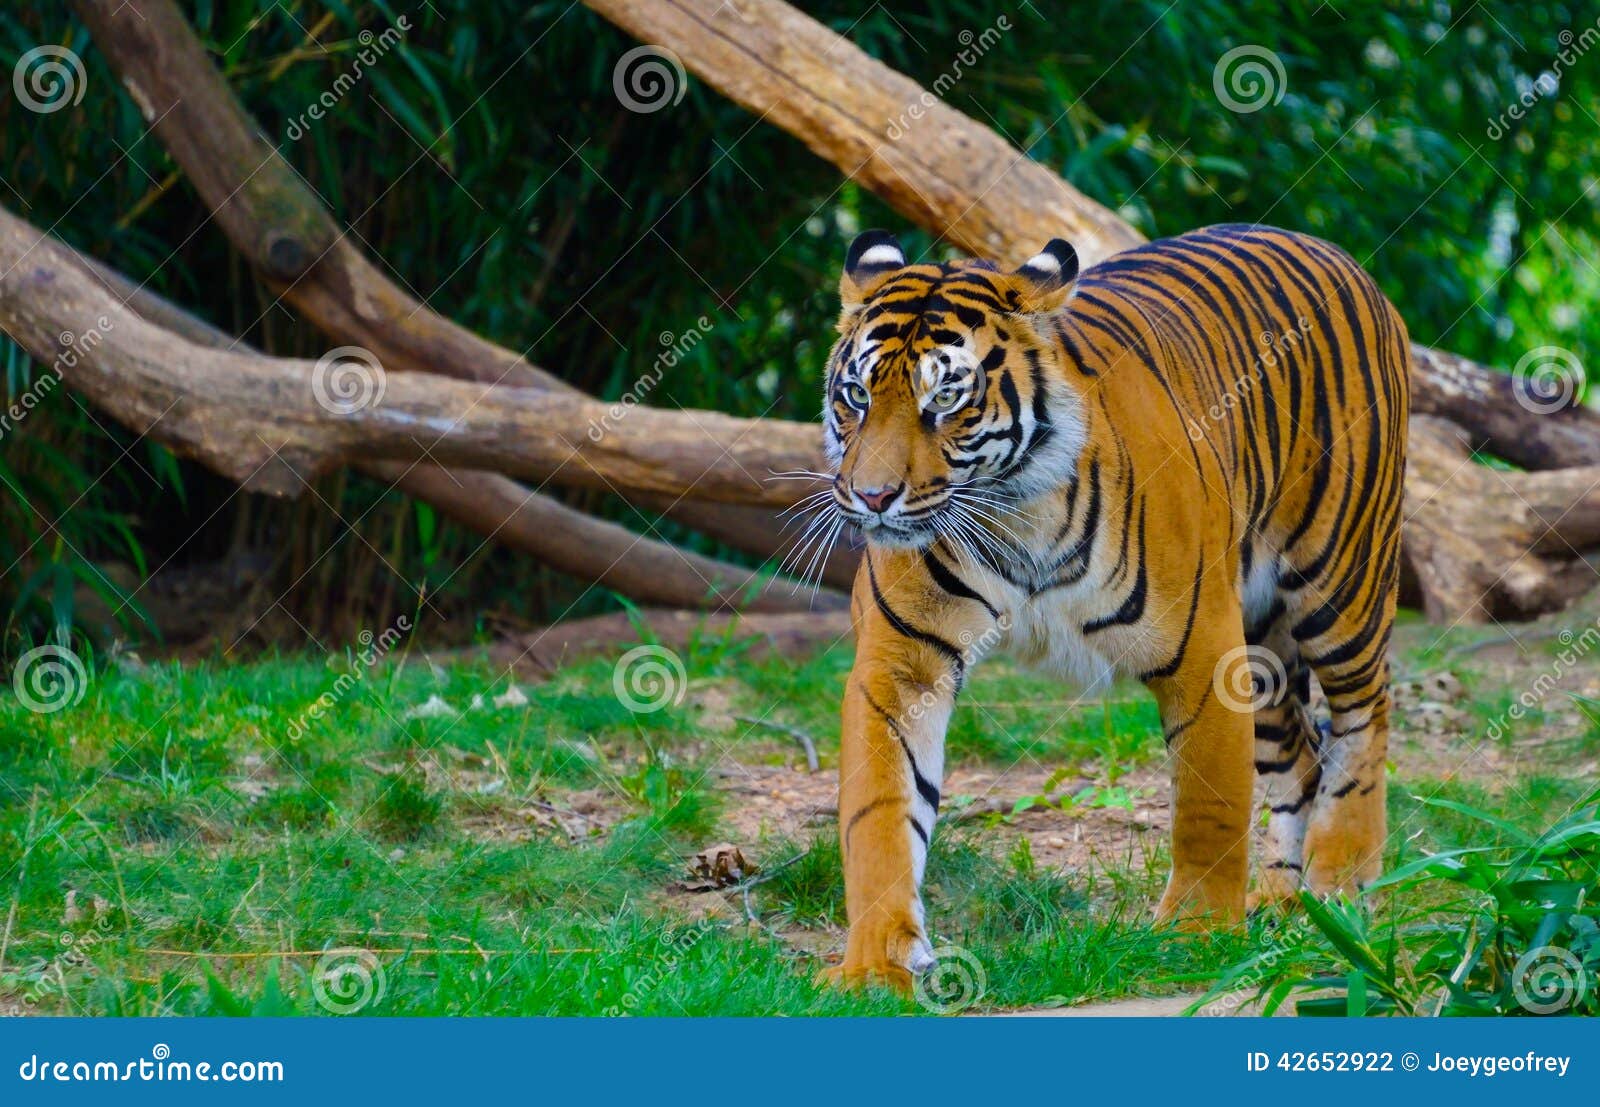 fierce tiger